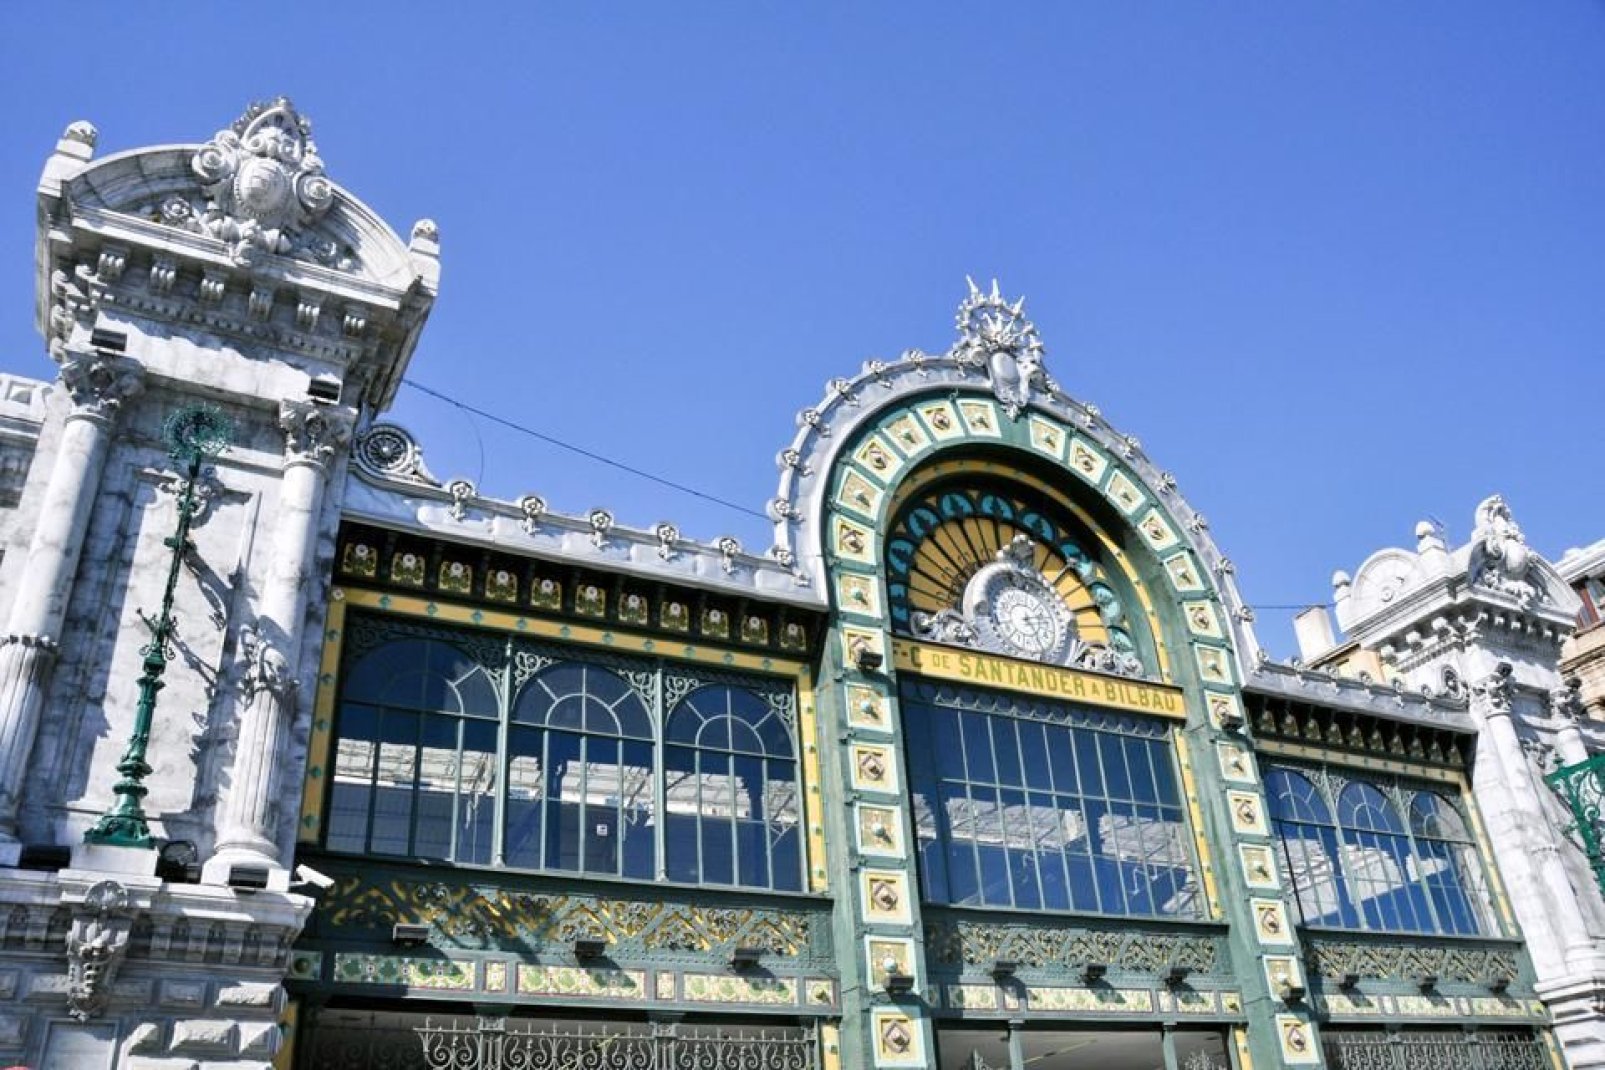 Der Concordia-Bahnhof wurde 1902 errichtet und ist ein einzigartiges Jugendstil-Gebäude. Es ist Teil des Belle-Epoche-Kulturerbes von Bilbao.